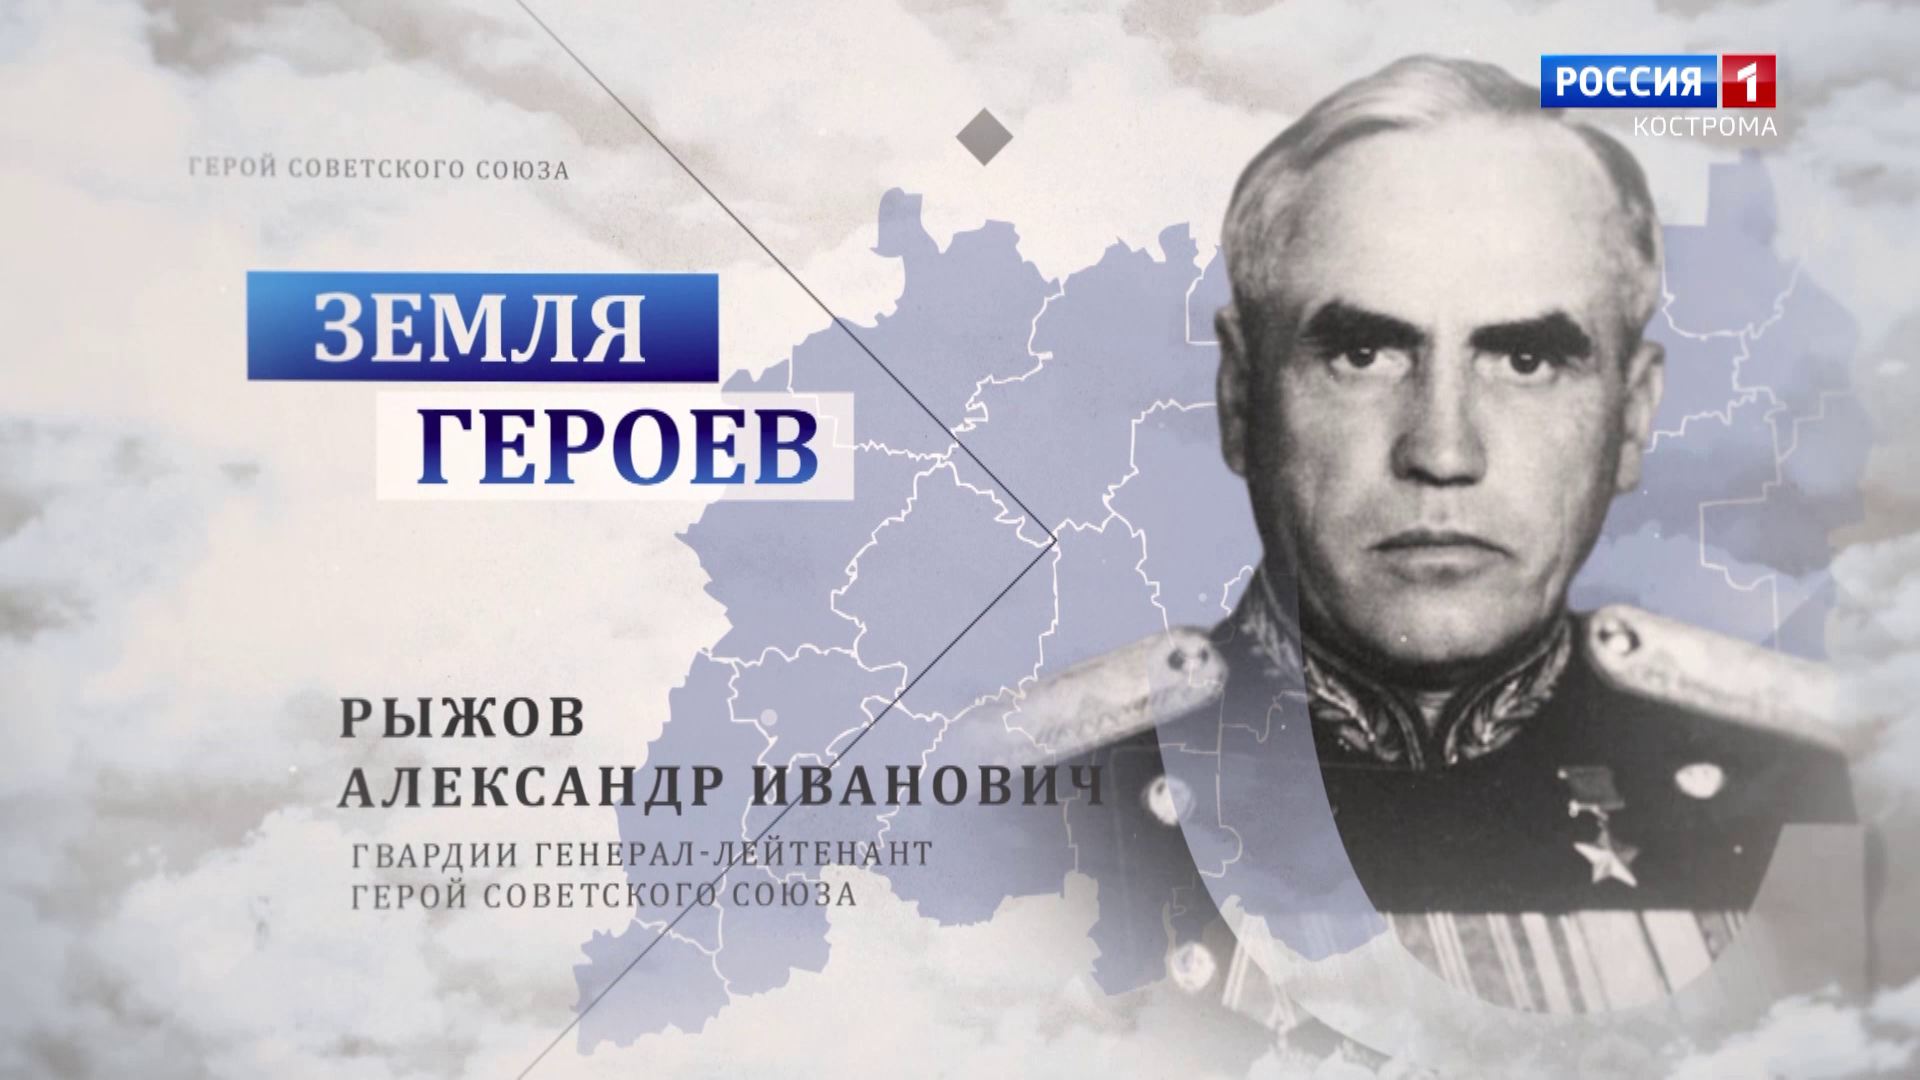 Земля героев: генерал-лейтенант Александр Рыжов